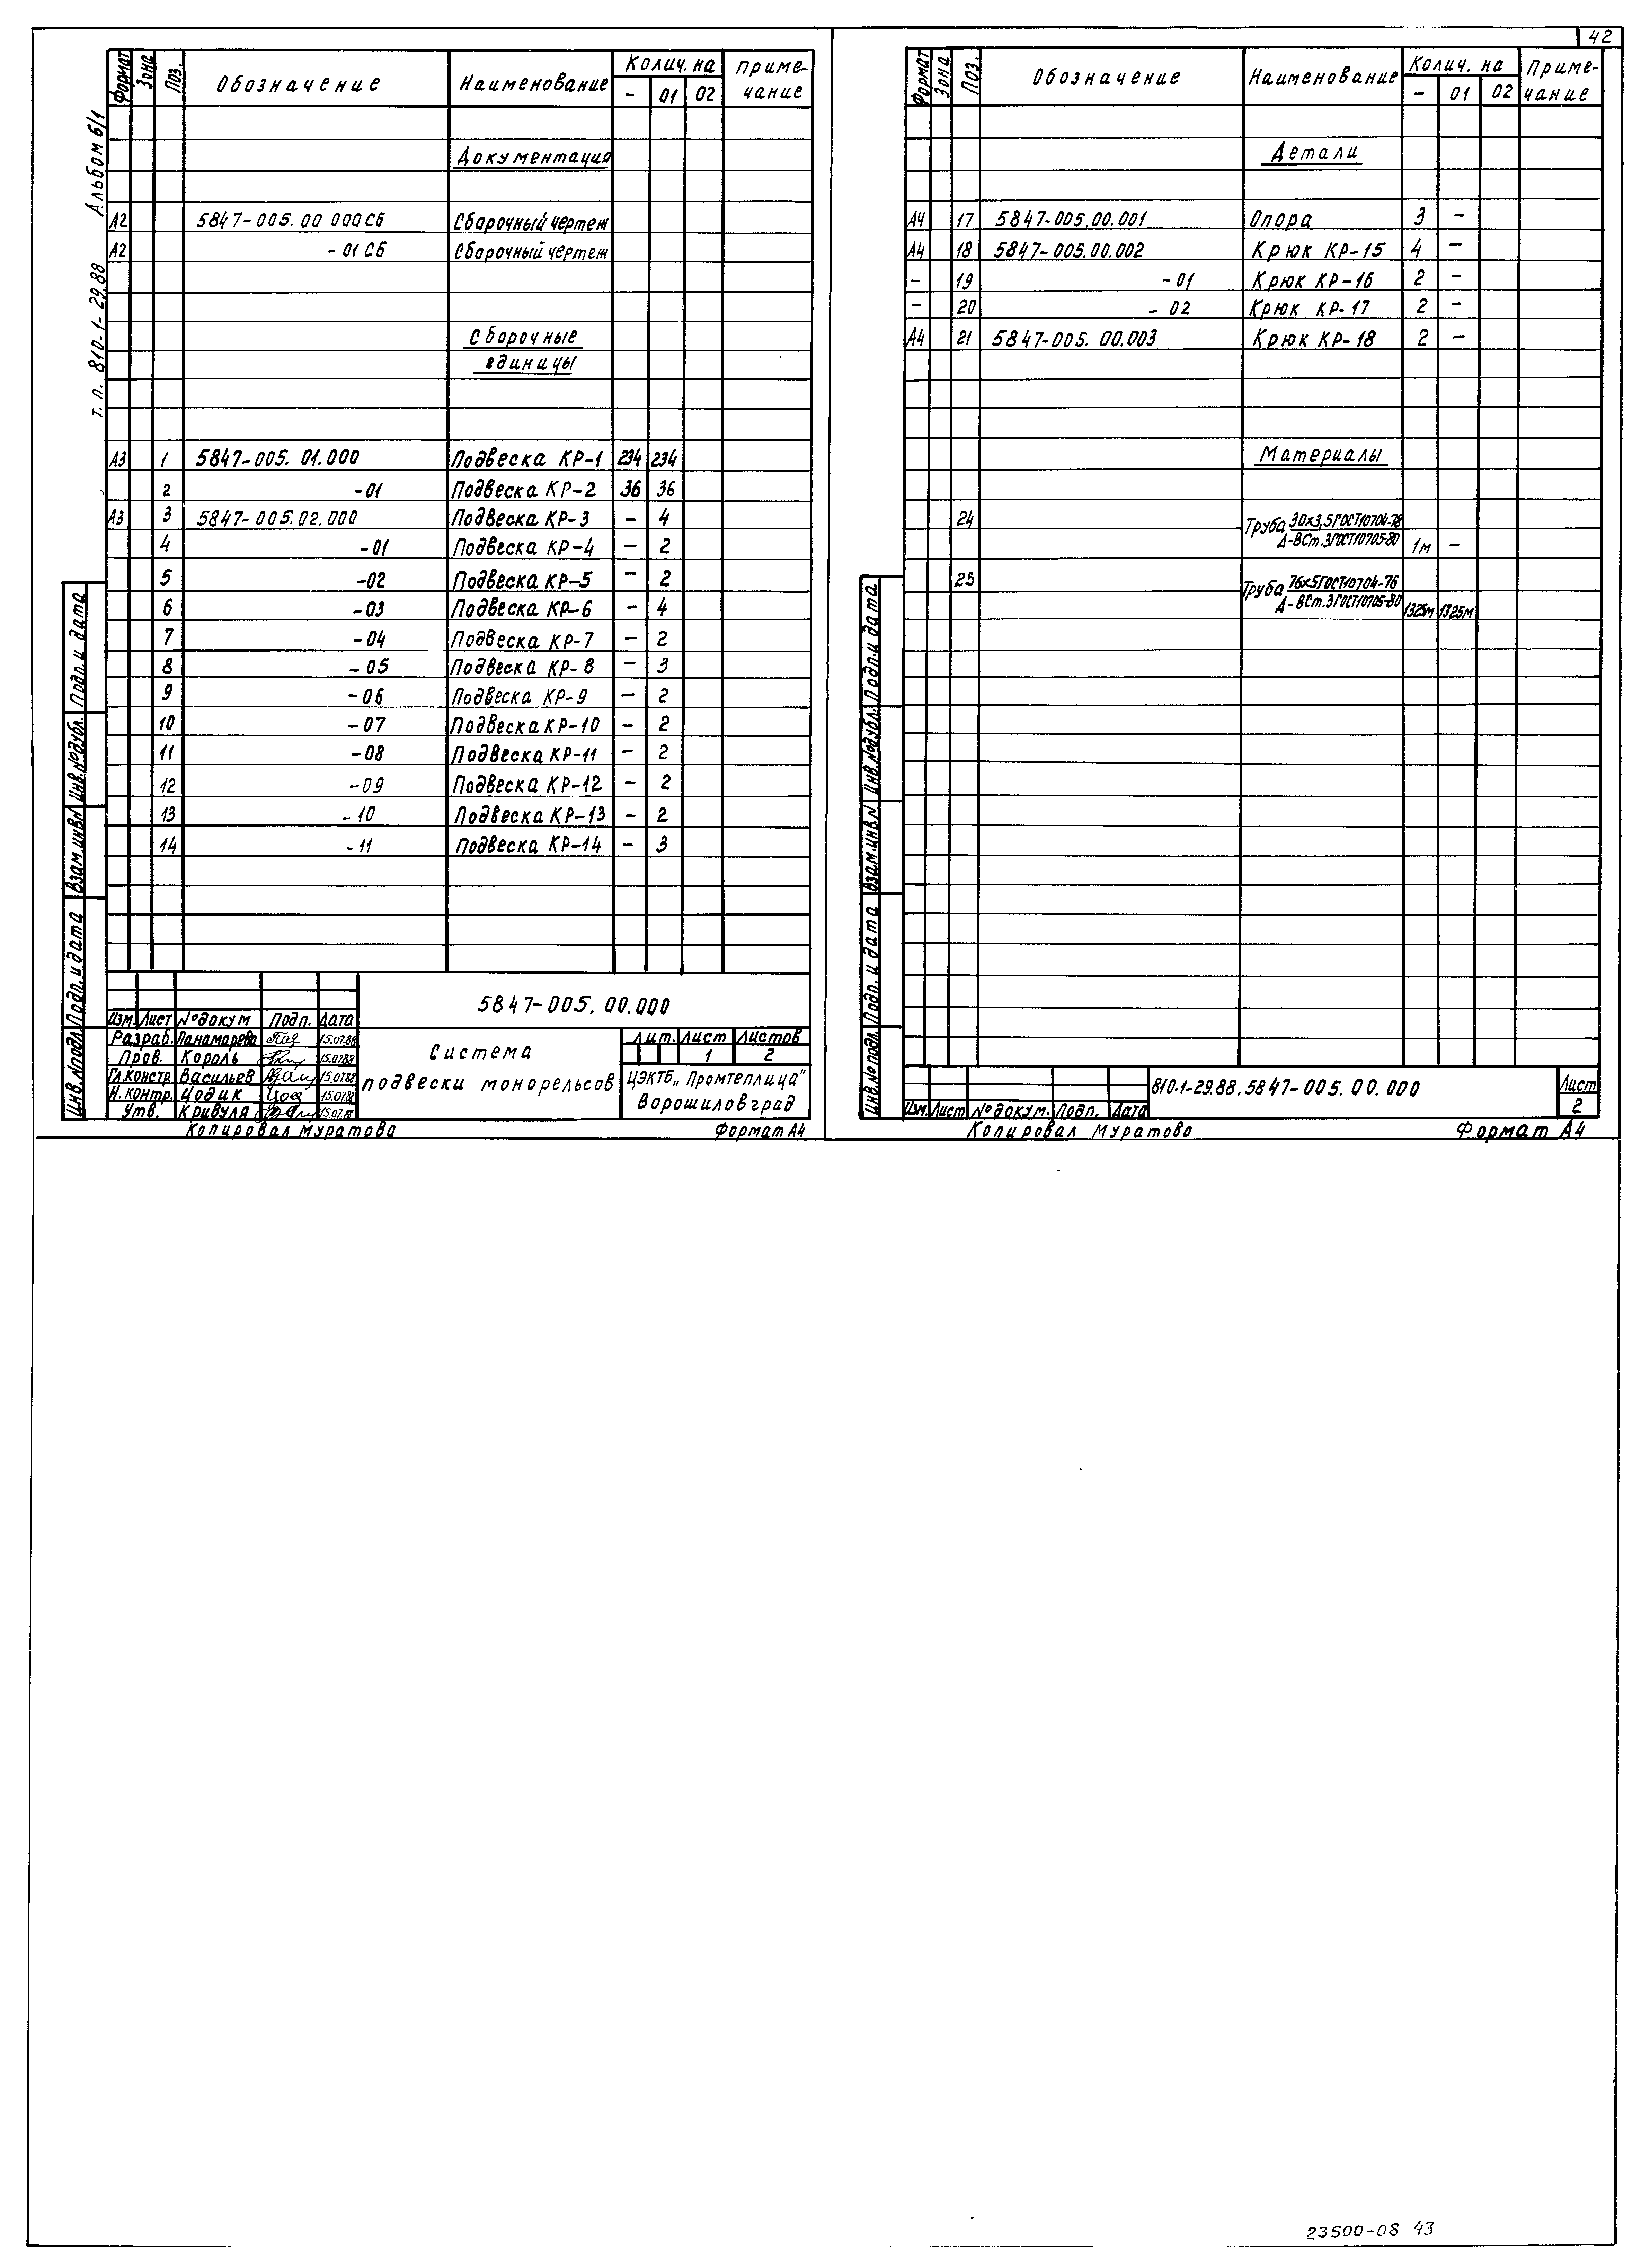 Типовой проект 810-1-29.88